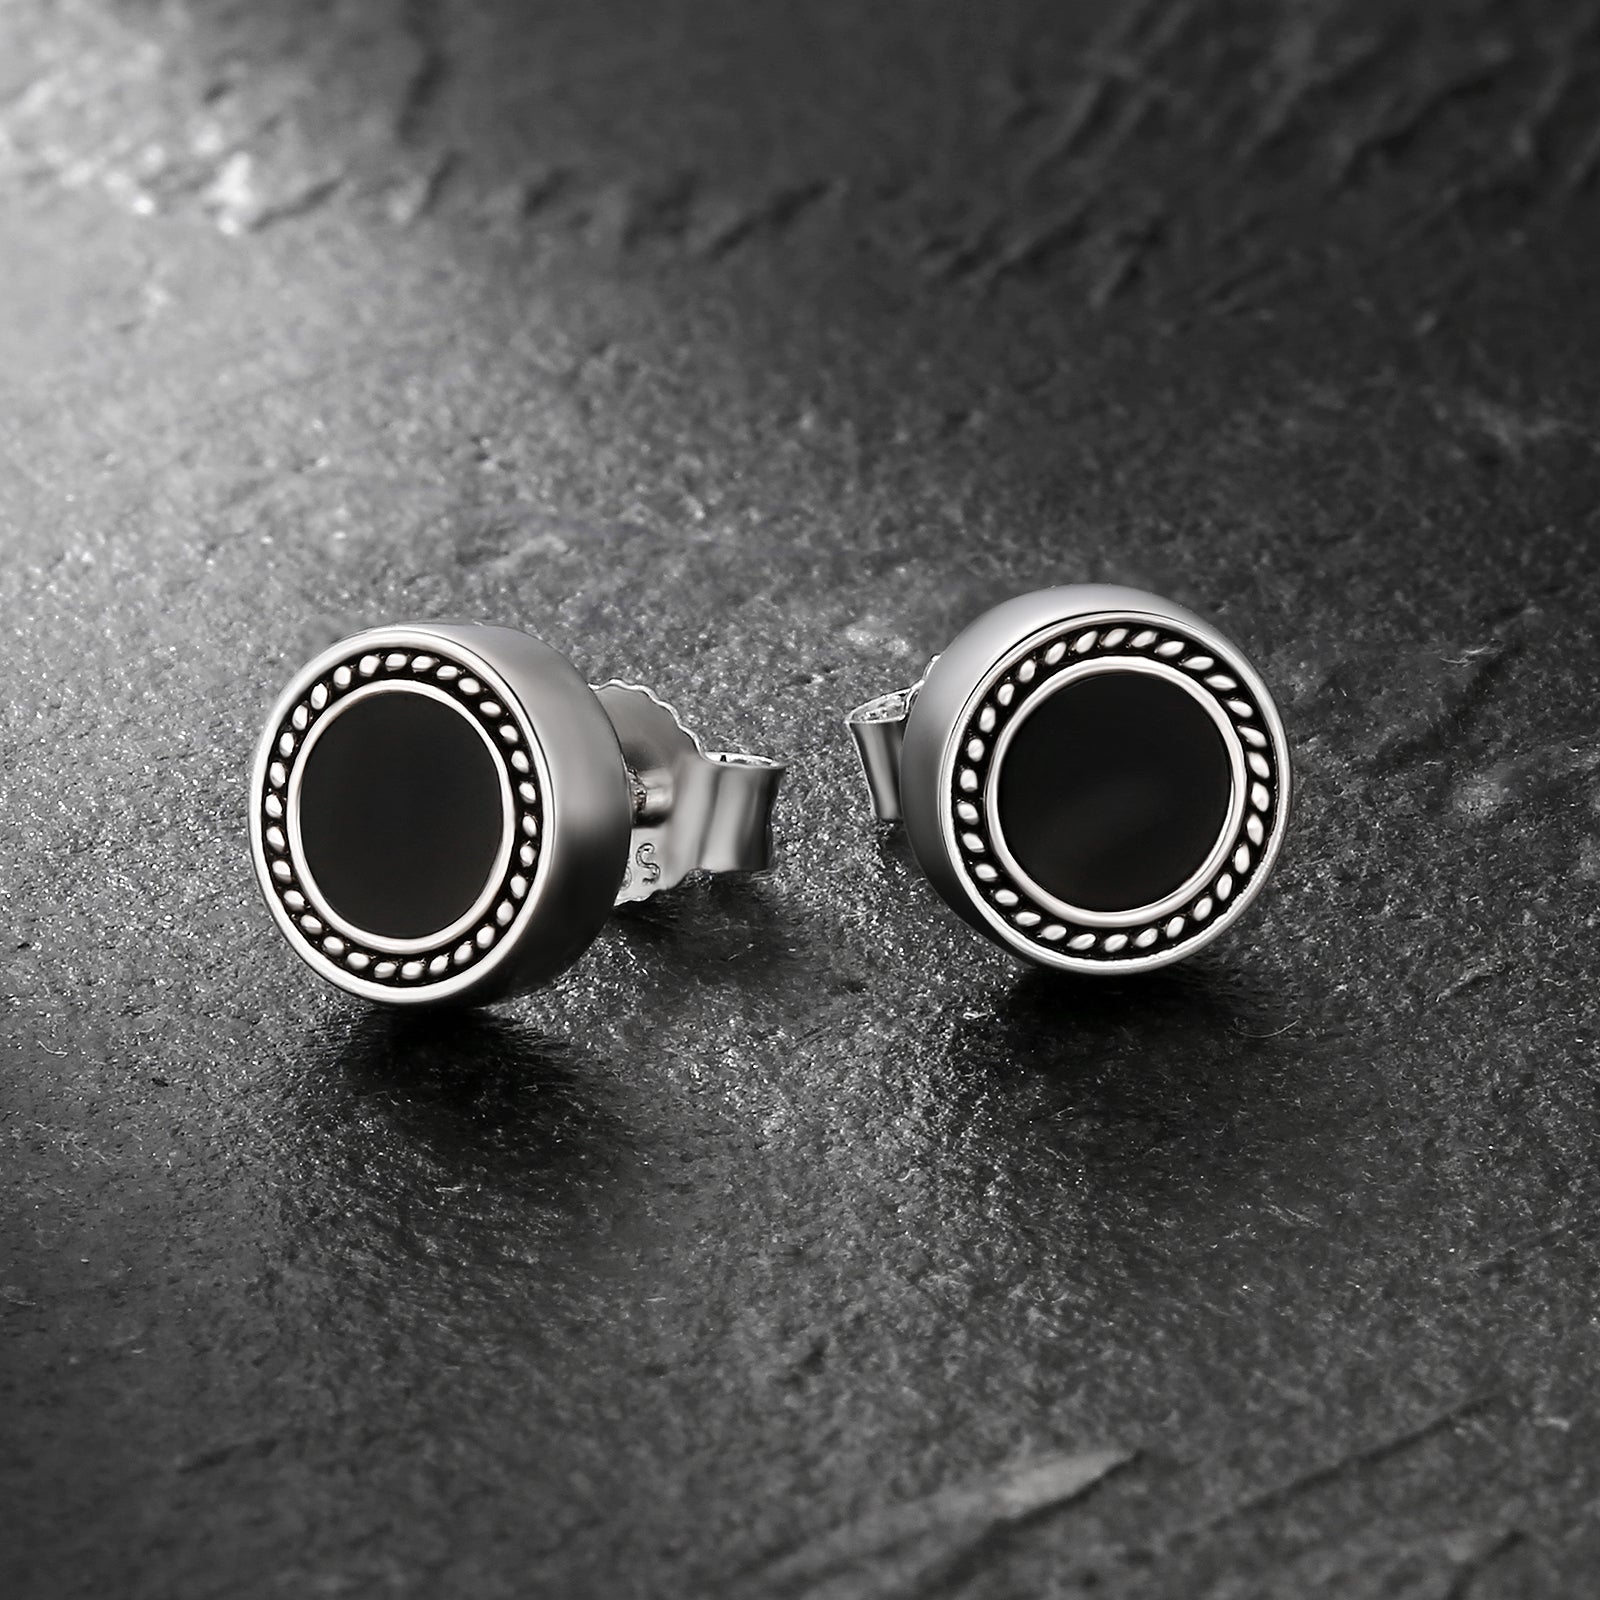 Wholesale Men's Earrings 8mm Radial Black Agate Round Iced Stud Earrings for Men